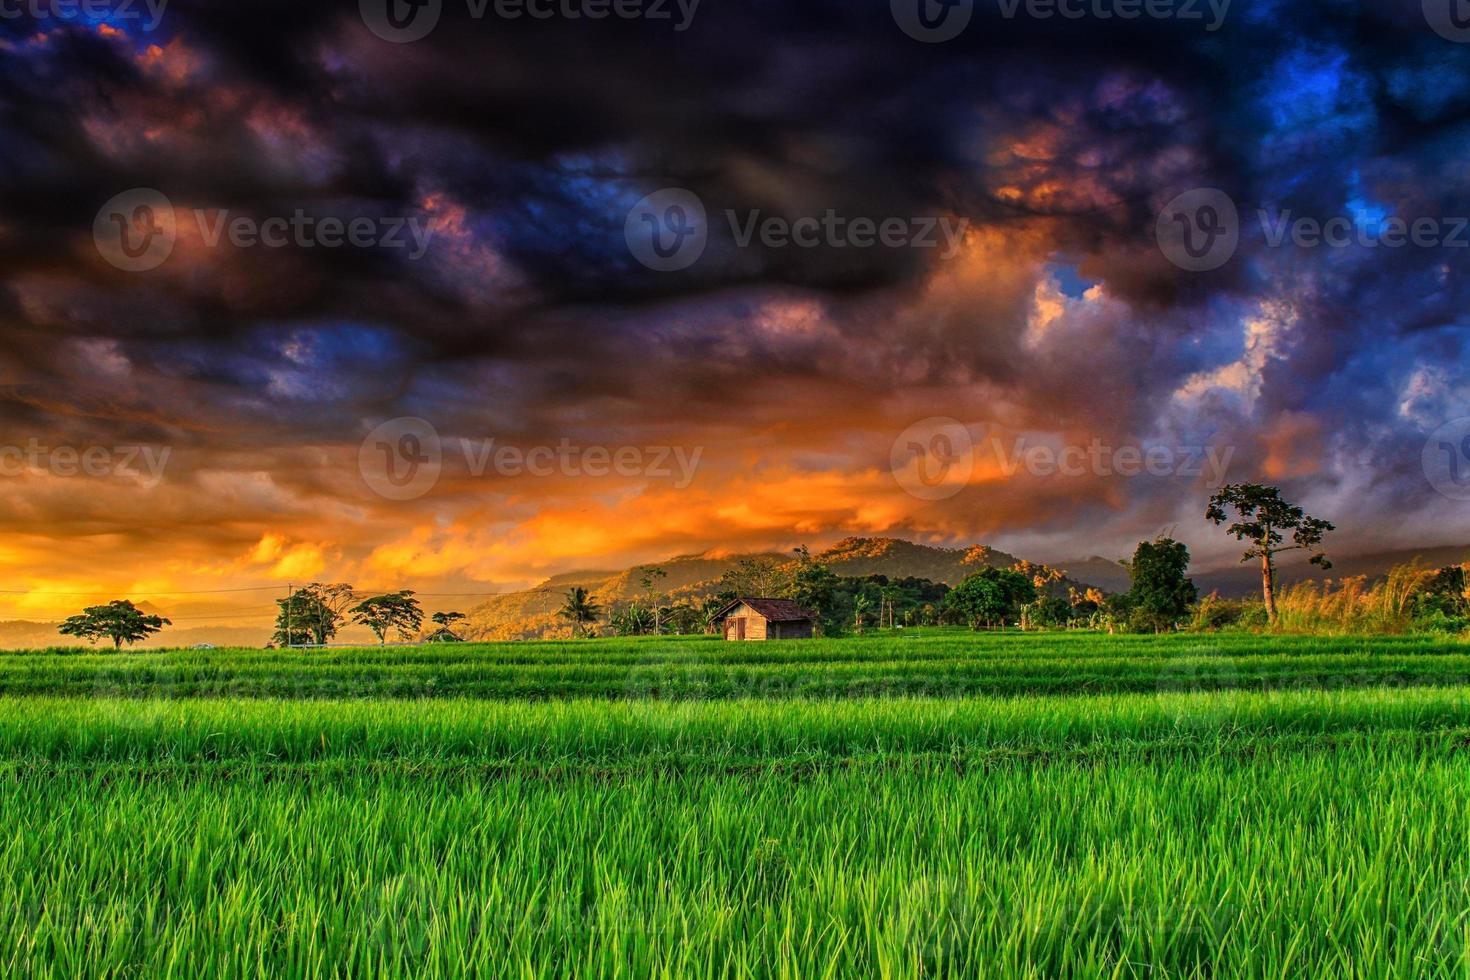 la vue sur les rizières vertes avec le ciel monstre effrayant le soir photo